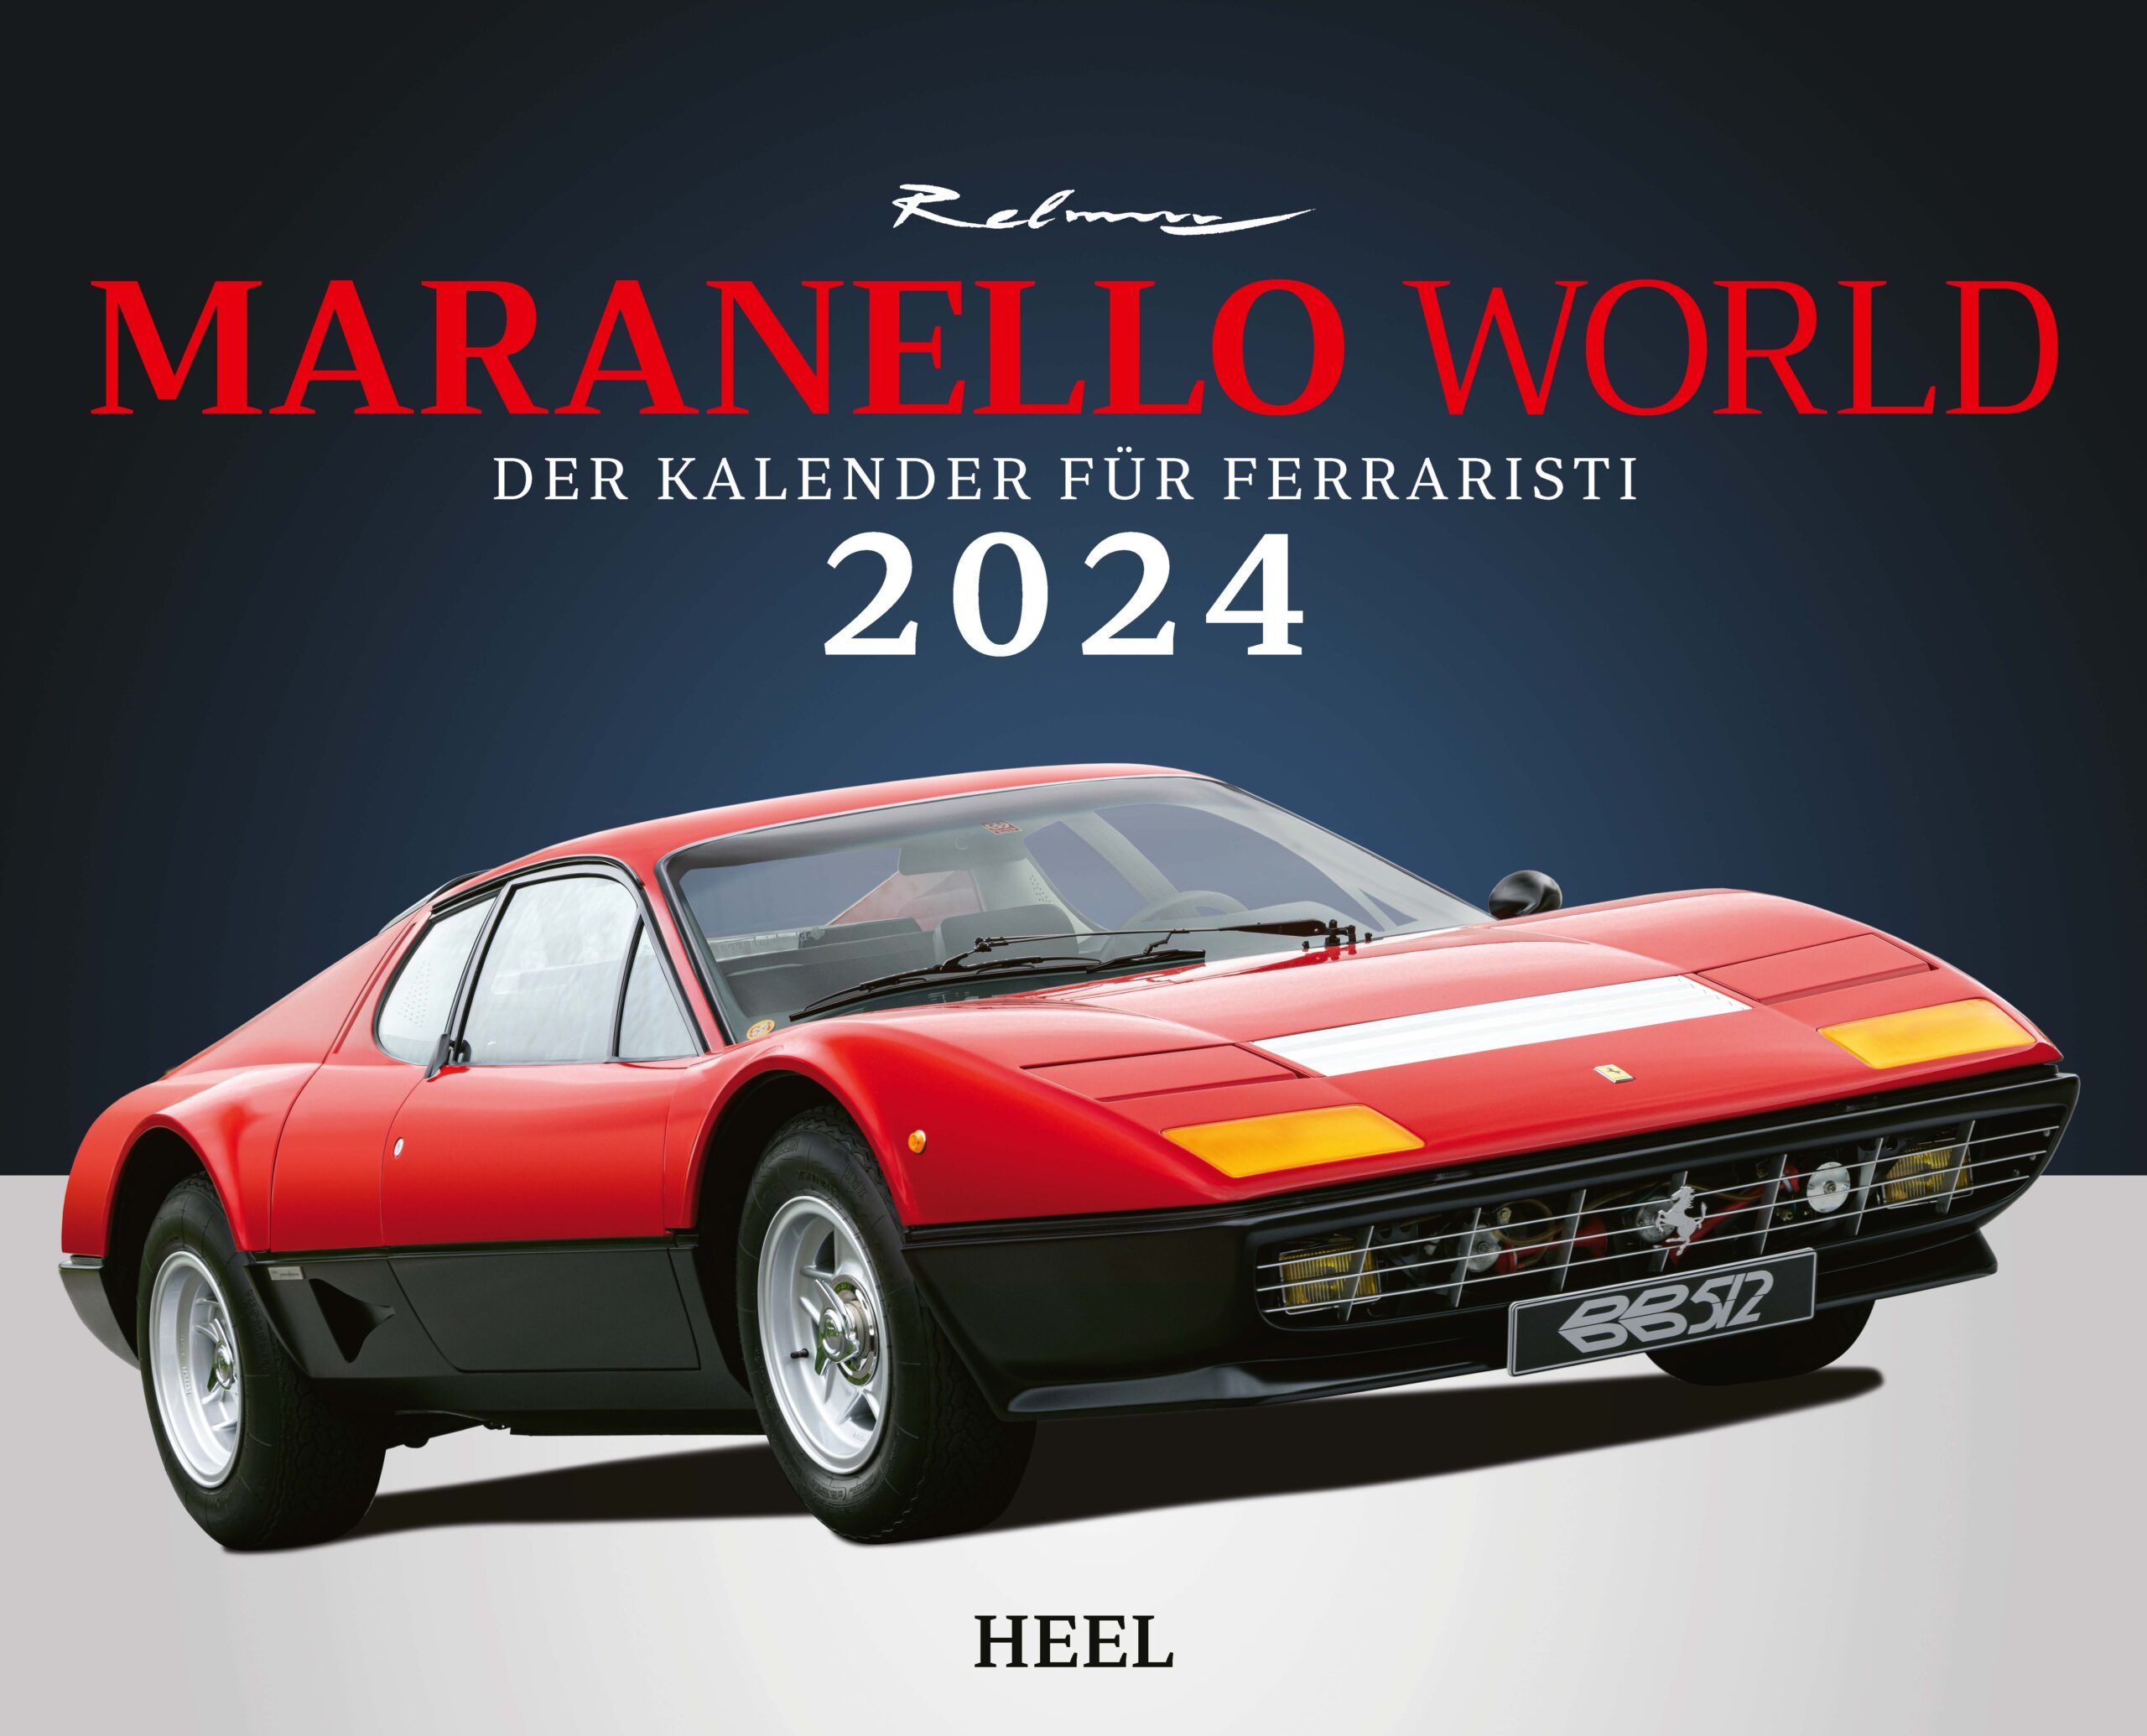 Der Kalender für Ferraristi: Maranello World 2024